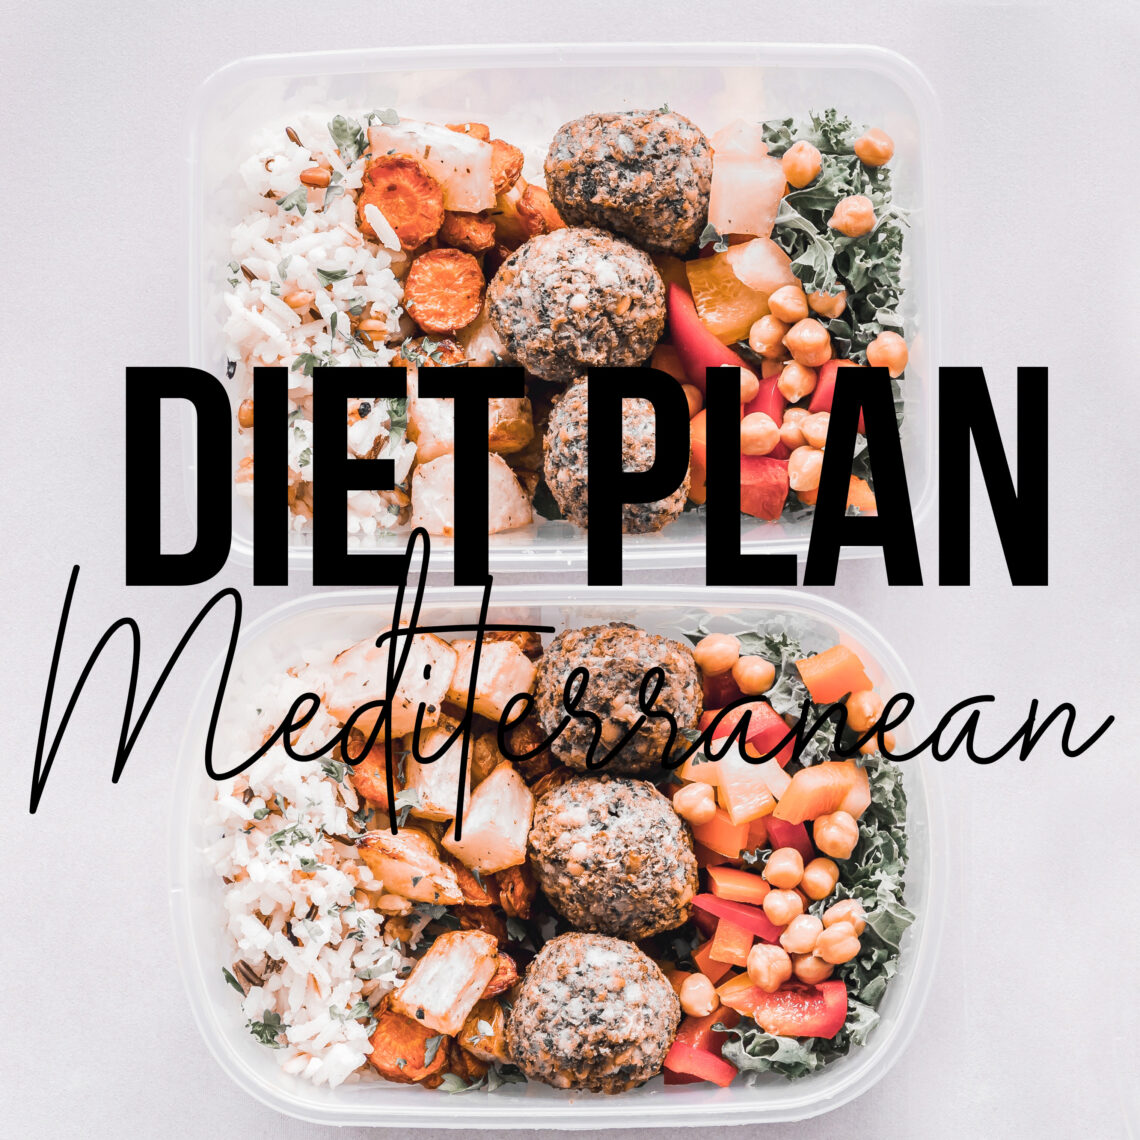 One week Mediterranean diet plan